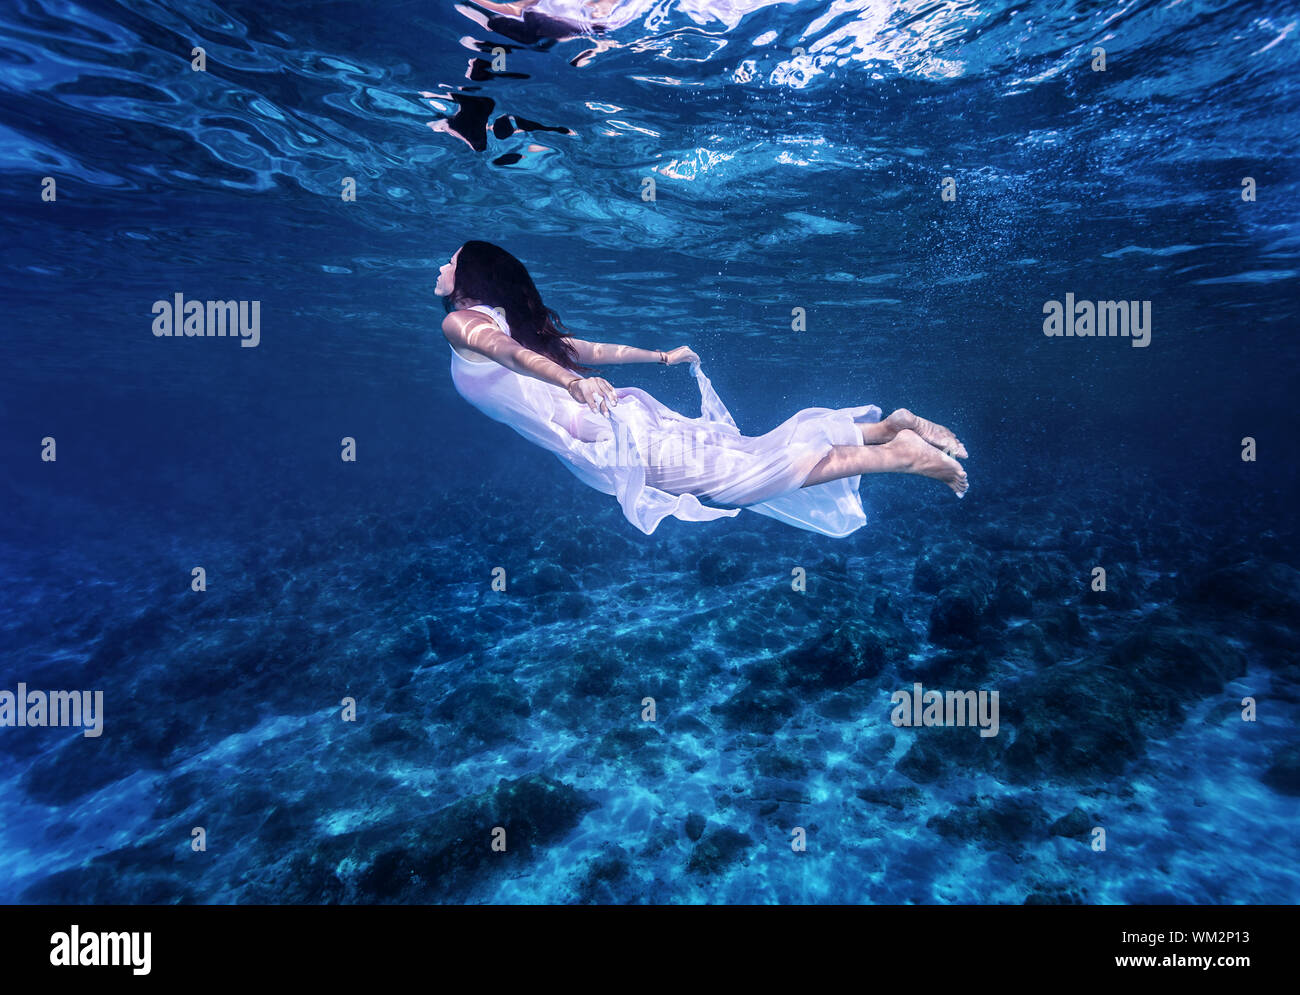 Swimming in beautiful blue sea Stock Photo